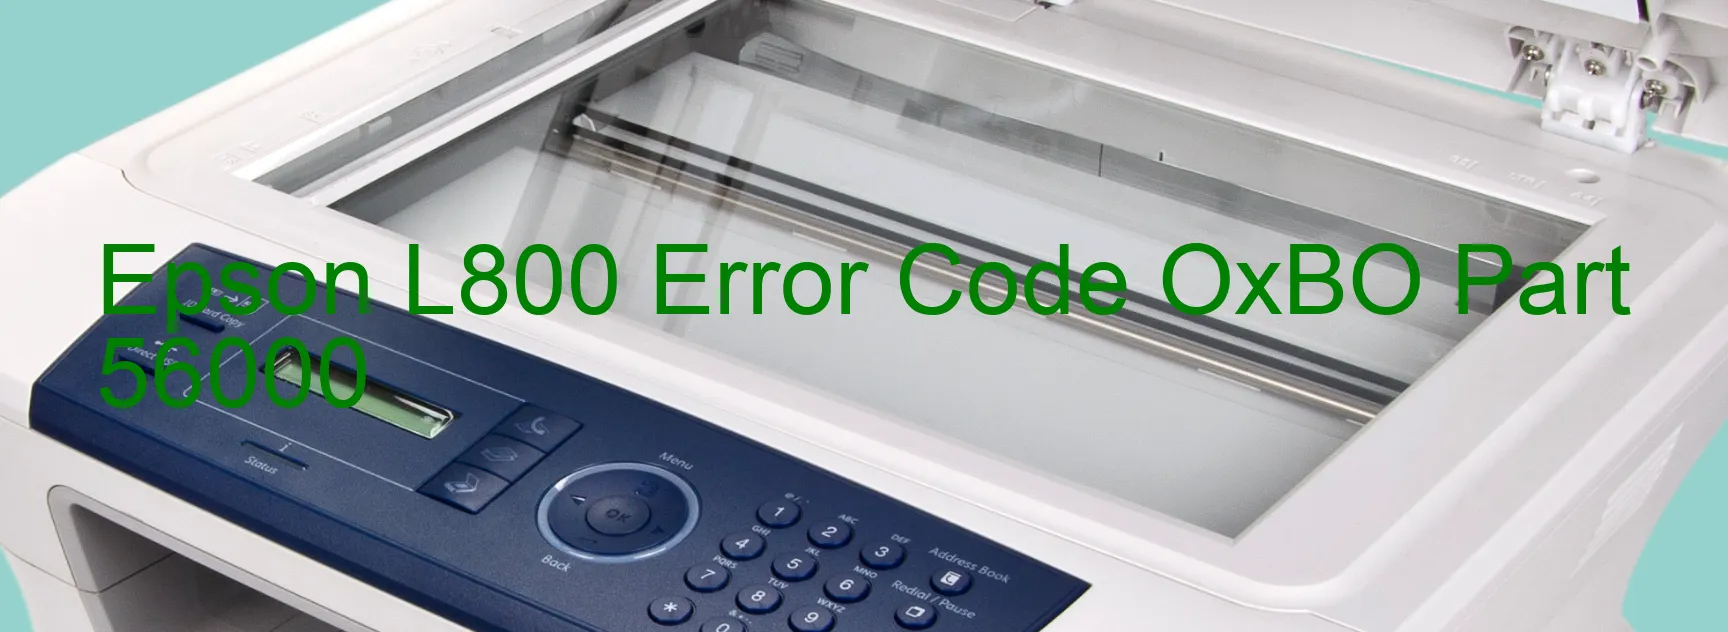 Epson L800 Error Code OxBO Part 56000